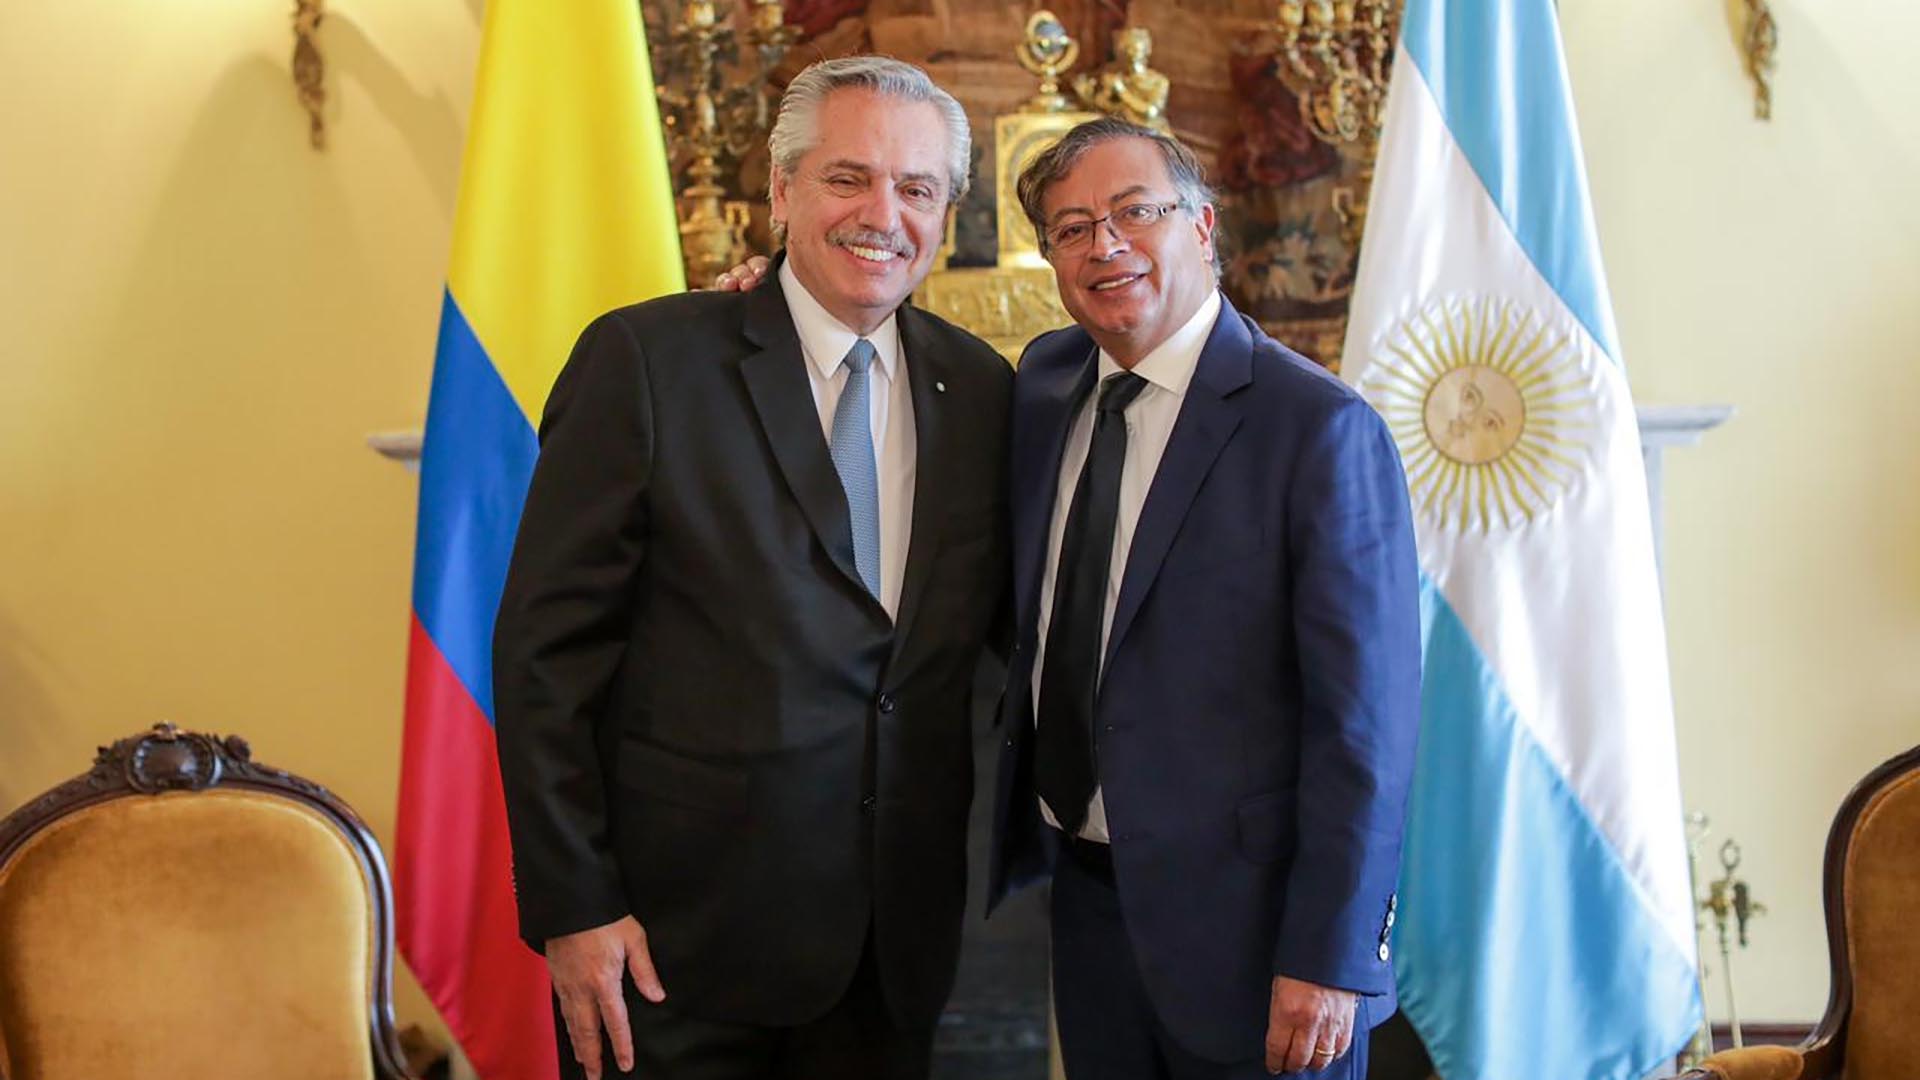 Alberto Fernández y Gustavo Petro durante su reunión oficial en Bogota, antes de la asunción y jura del presidente de Colombia